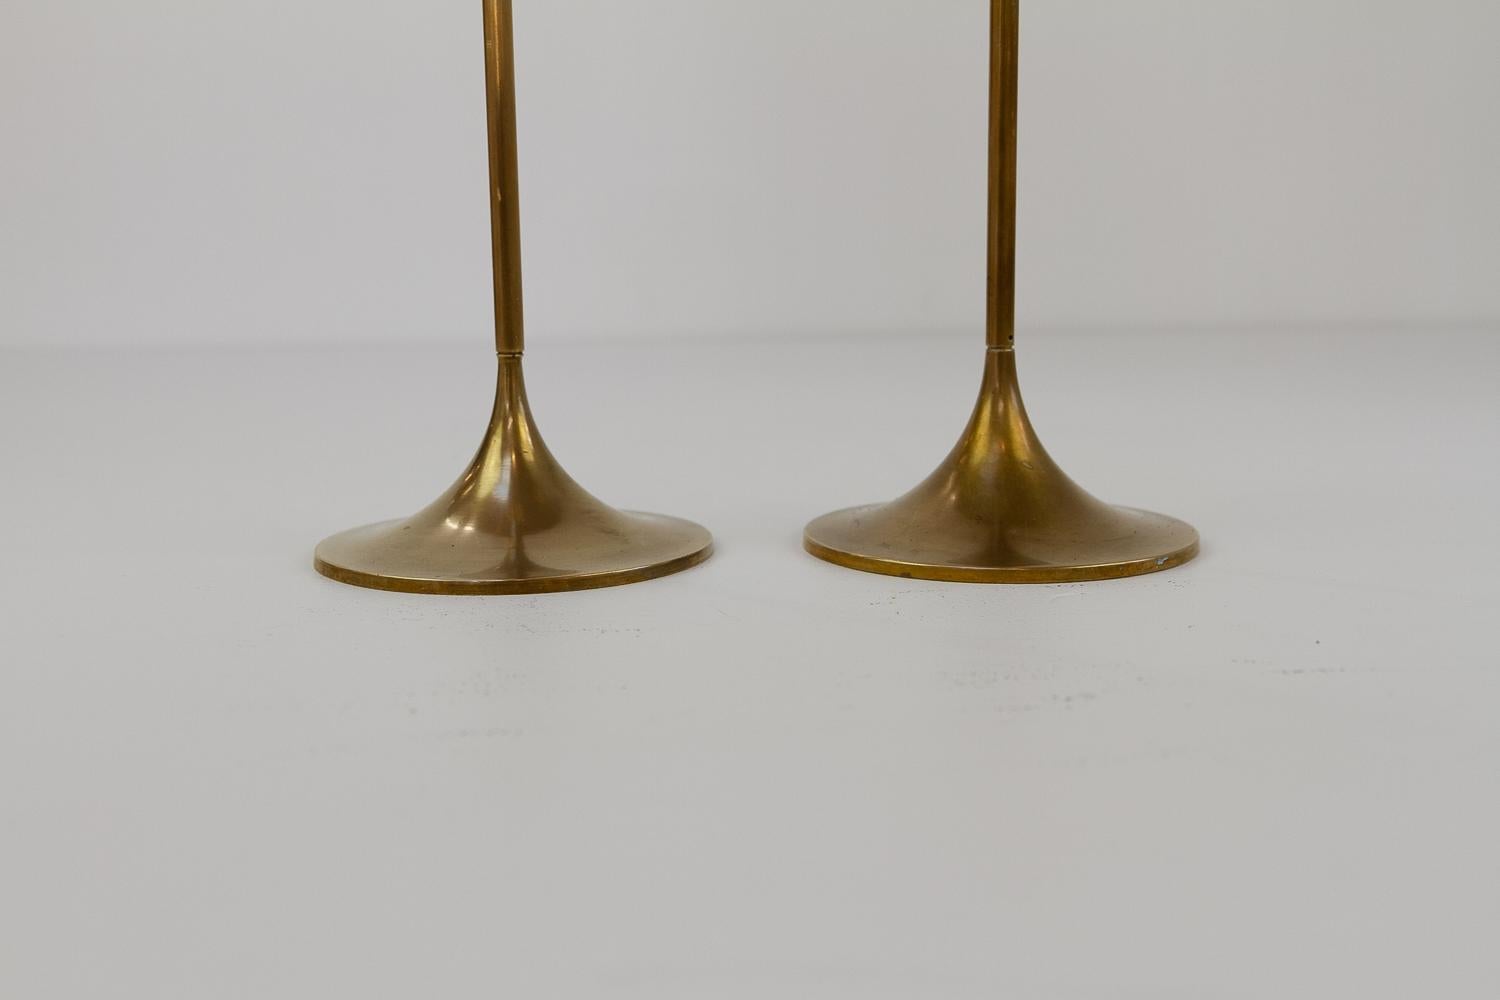 Scandinavian Modern Vintage Danish Brass Candlesticks by Torben Ørskov 1960s. Set of 2. For Sale